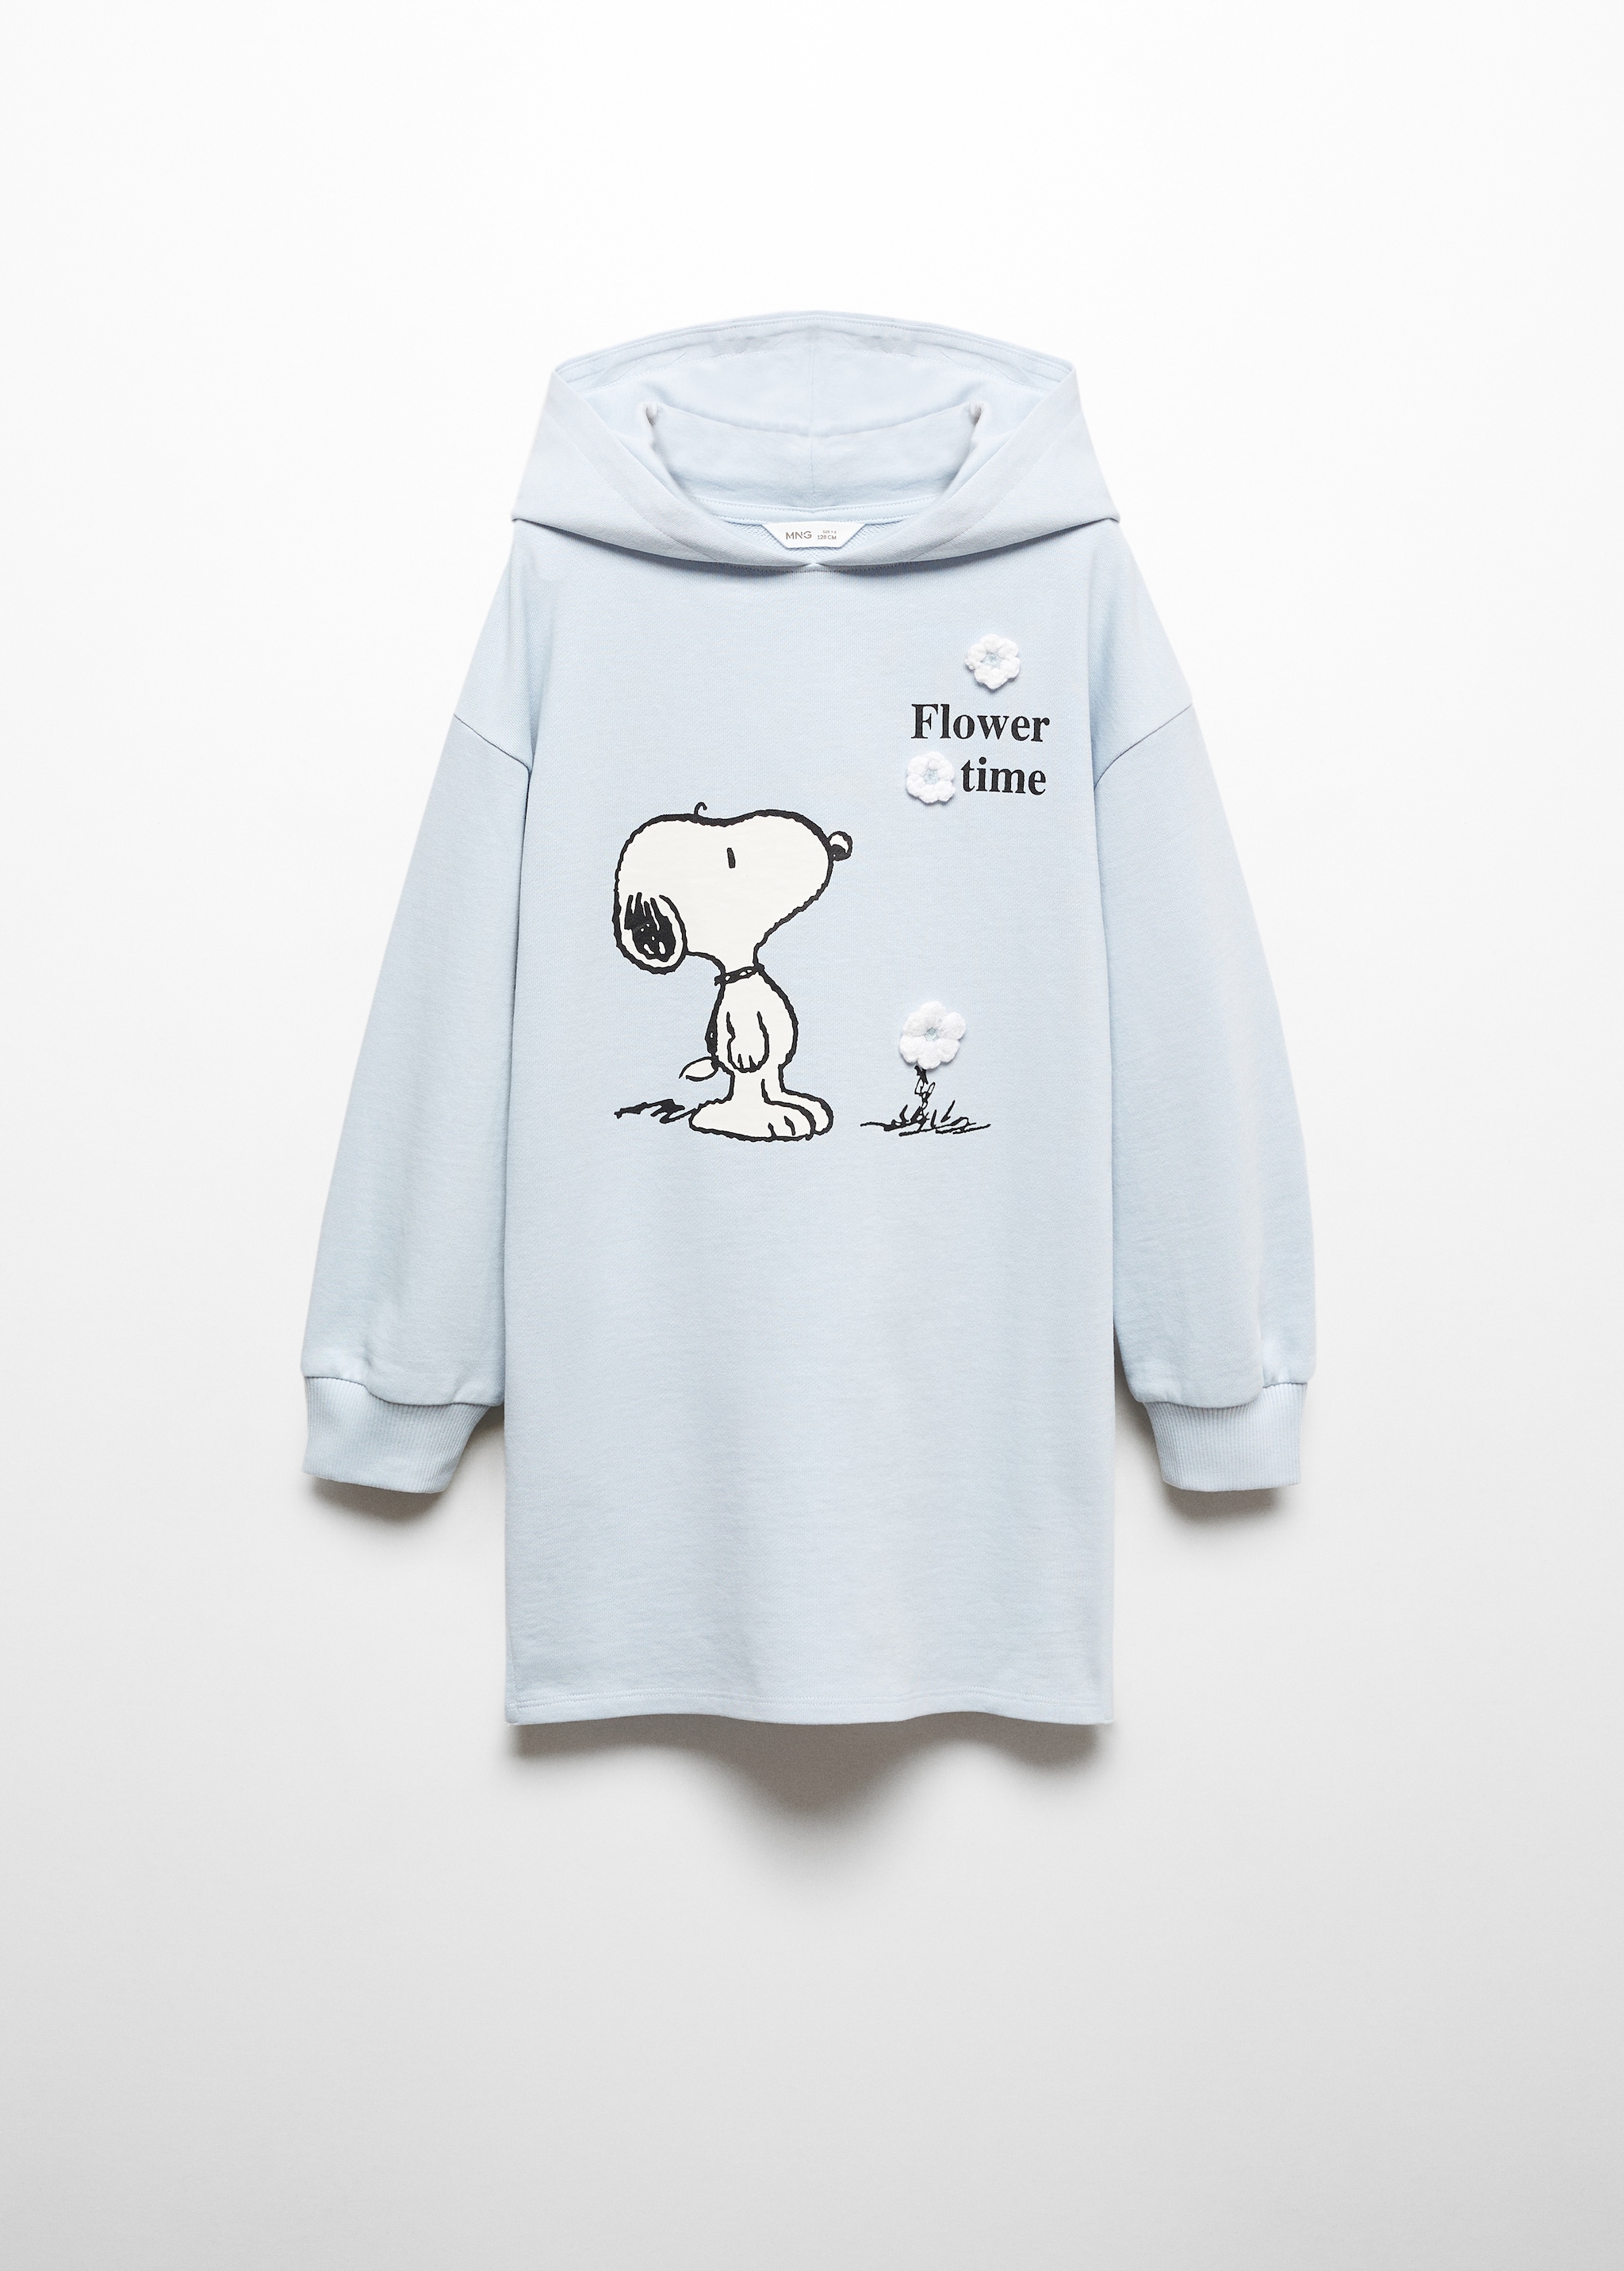 Robe sweat-shirt Snoopy - Article sans modèle